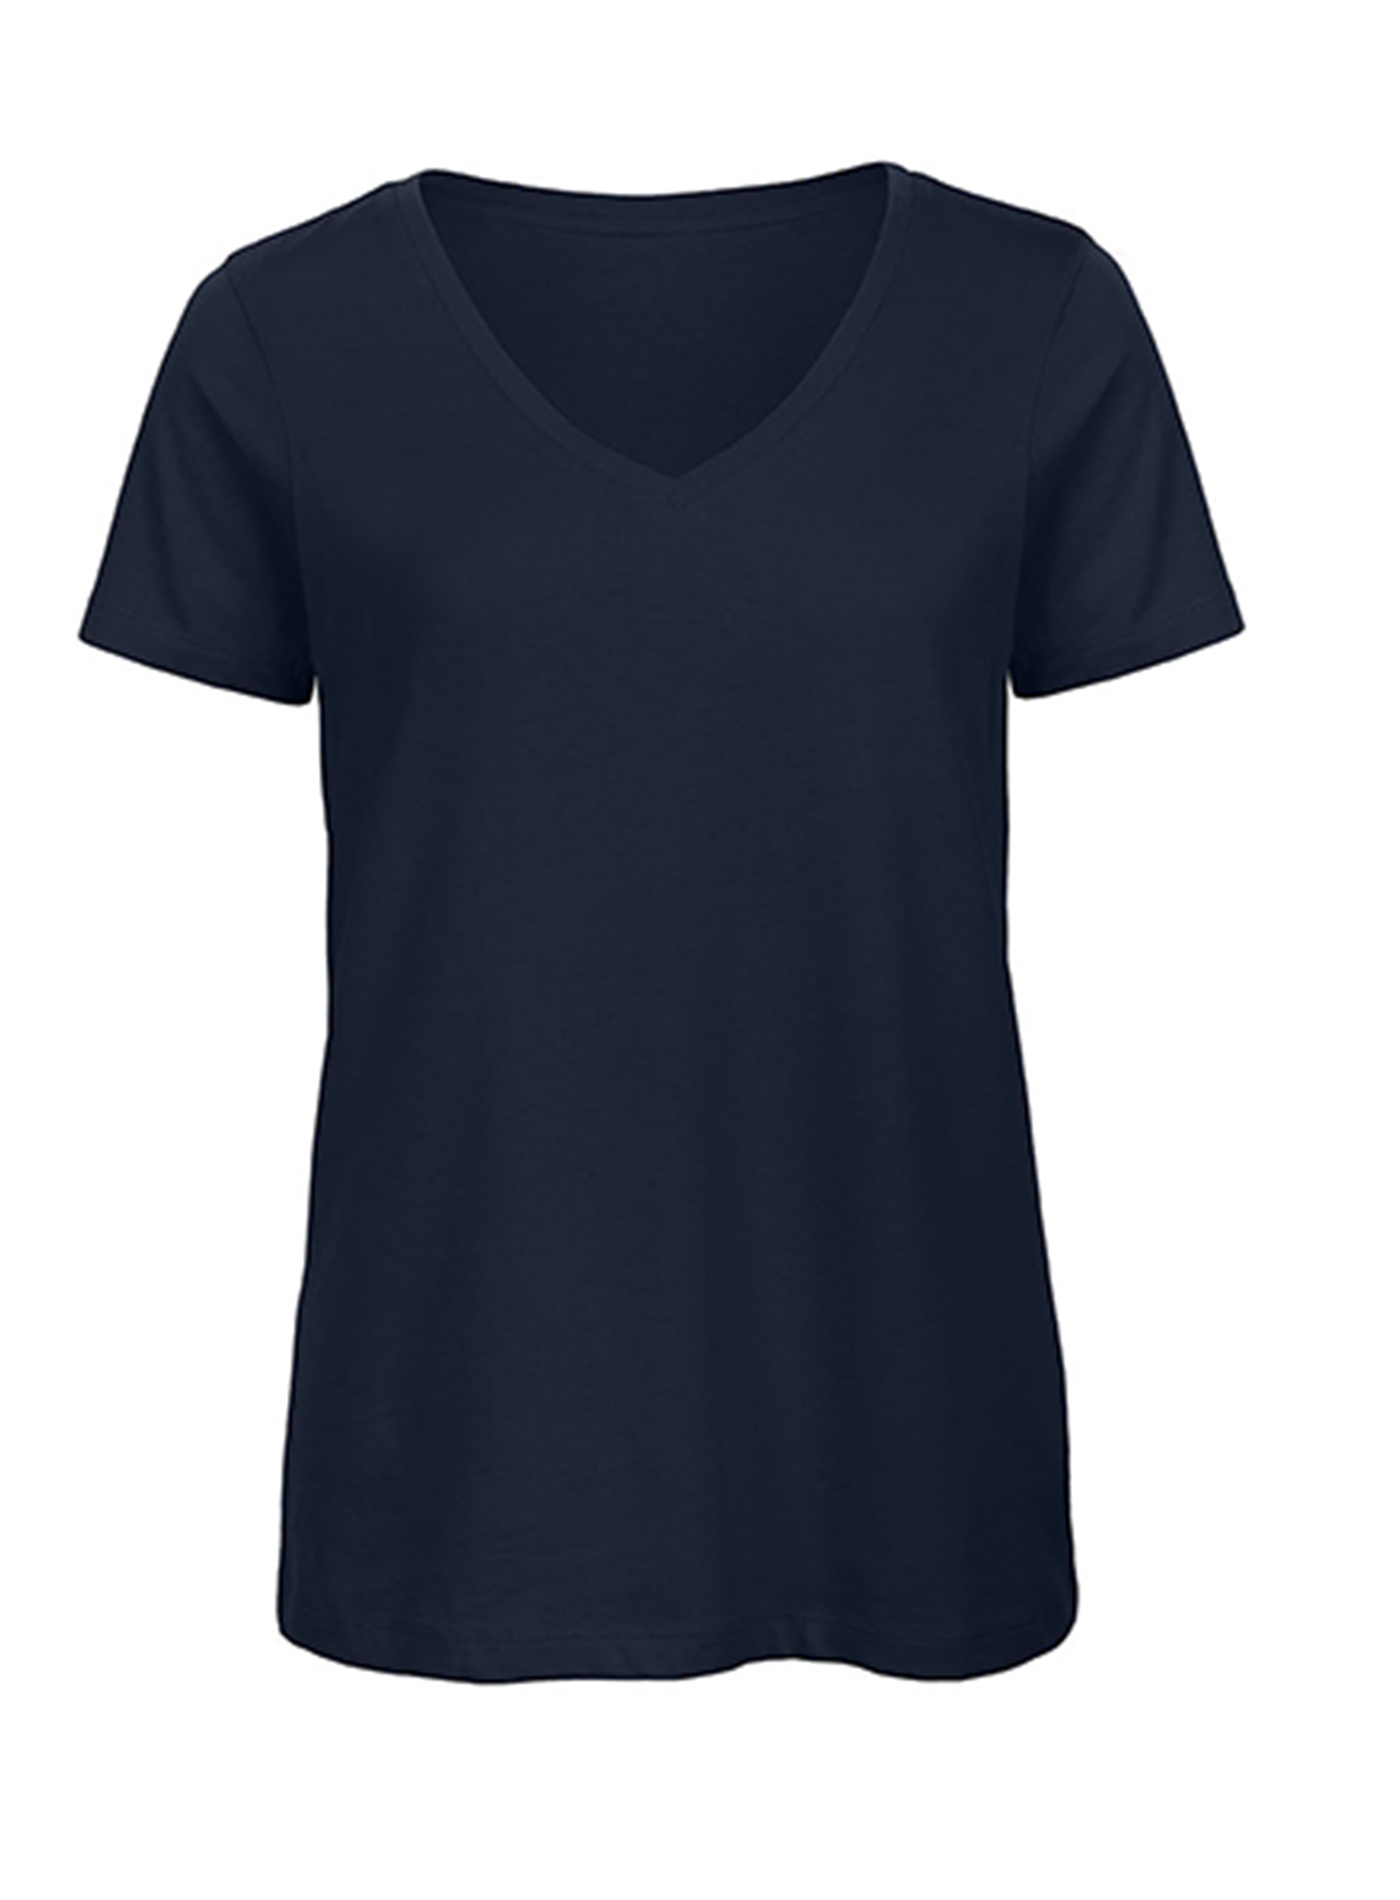 Dámské tričko Inspire s výstřihem do V - Námořnická modrá M